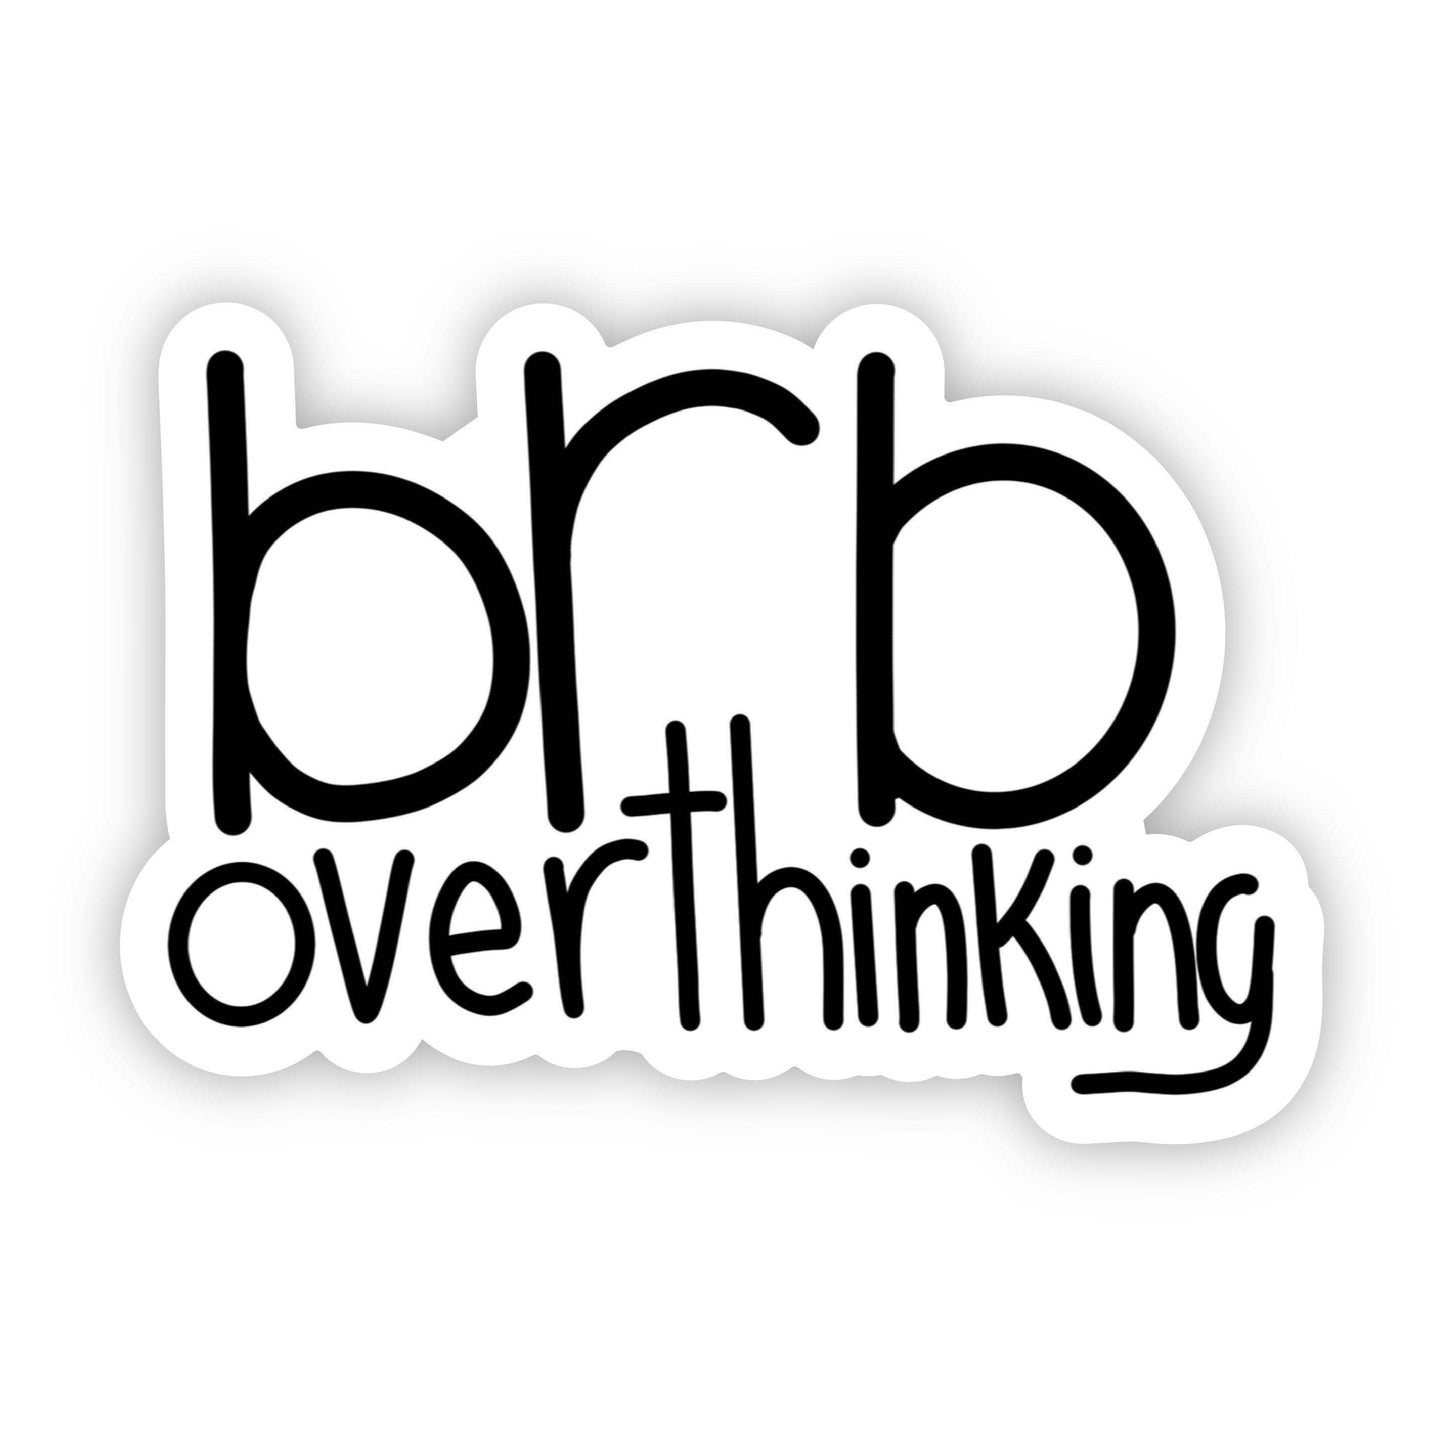 Brb Overthinking Sticker